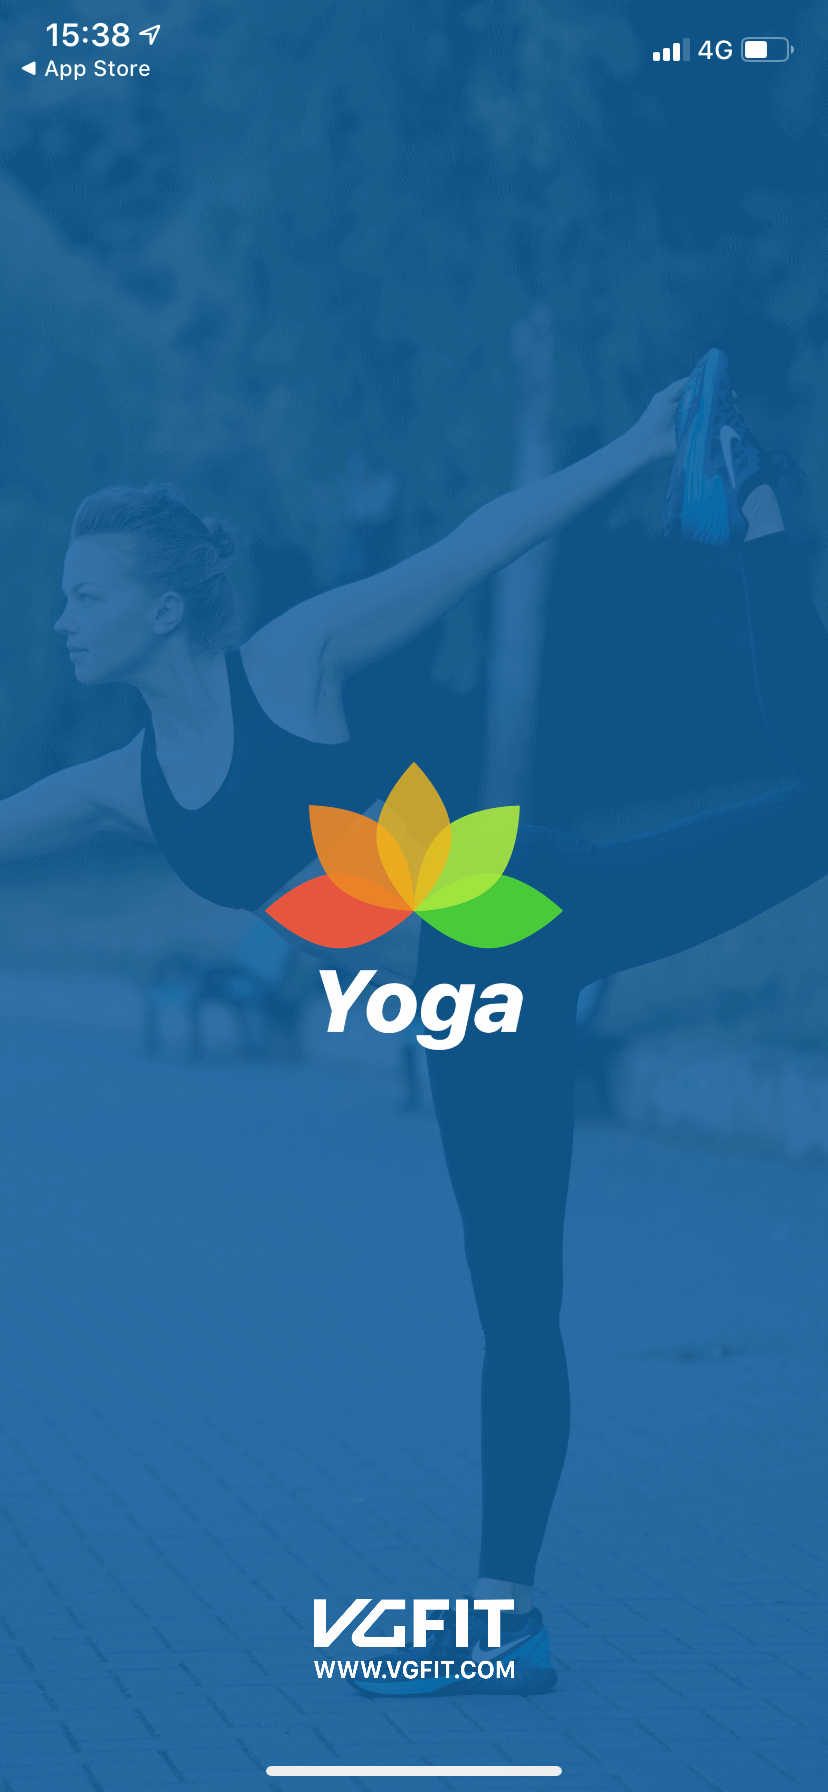 The Kids Yoga App - Go Go Yoga For Kids